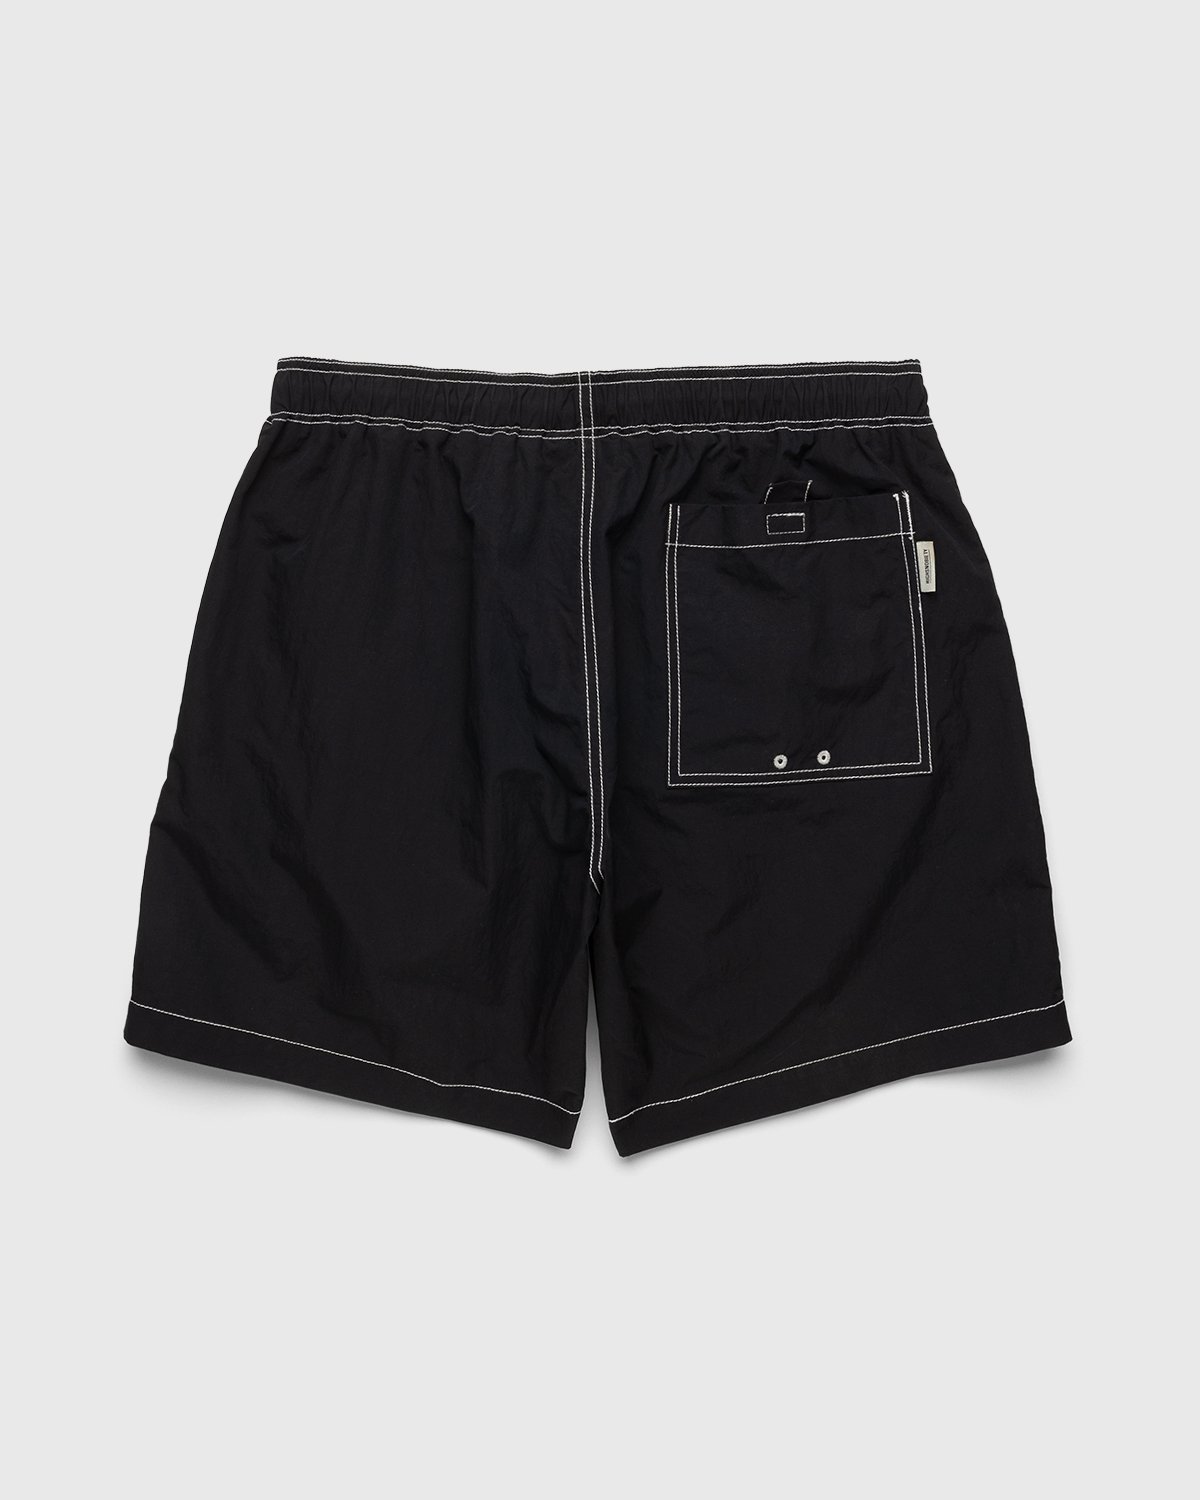 Highsnobiety - Contrast Brushed Nylon Water Shorts Black - Clothing - Black - Image 2